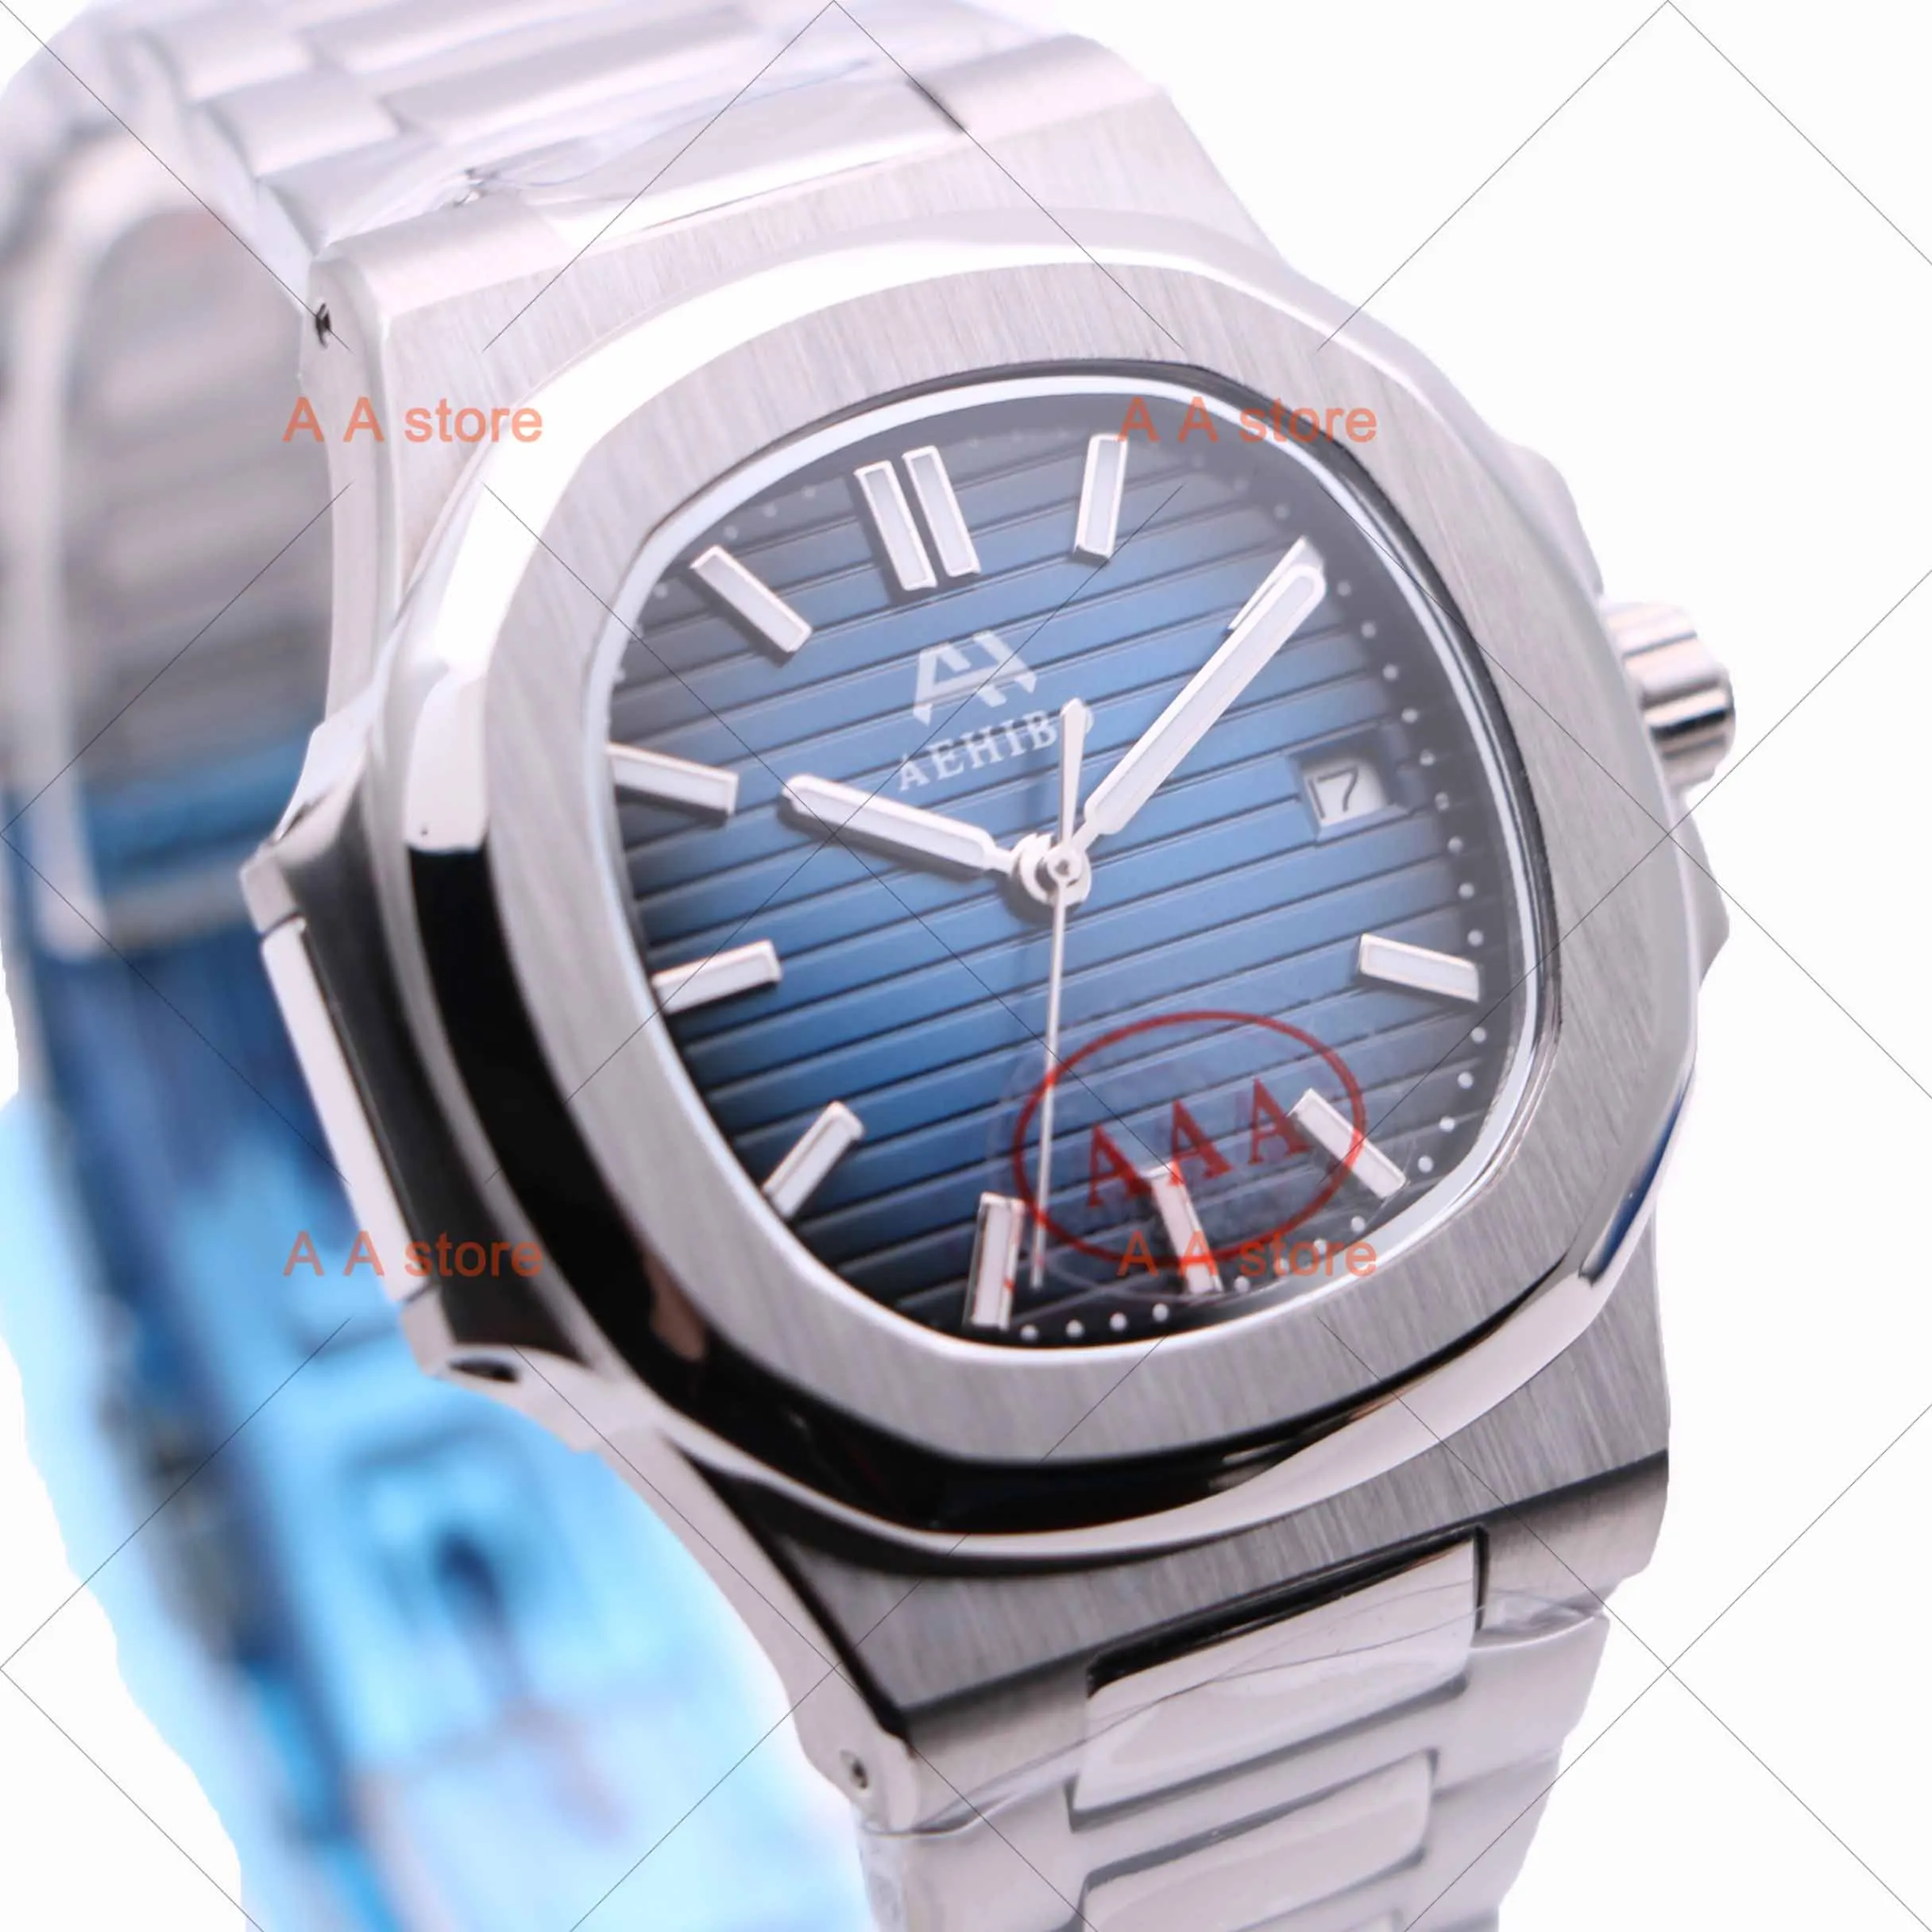 Часы AAA Роскошные брендовые Женевские часы 5711 PP часы мужские Miyota движение сапфировое стекло - Цвет: A-002